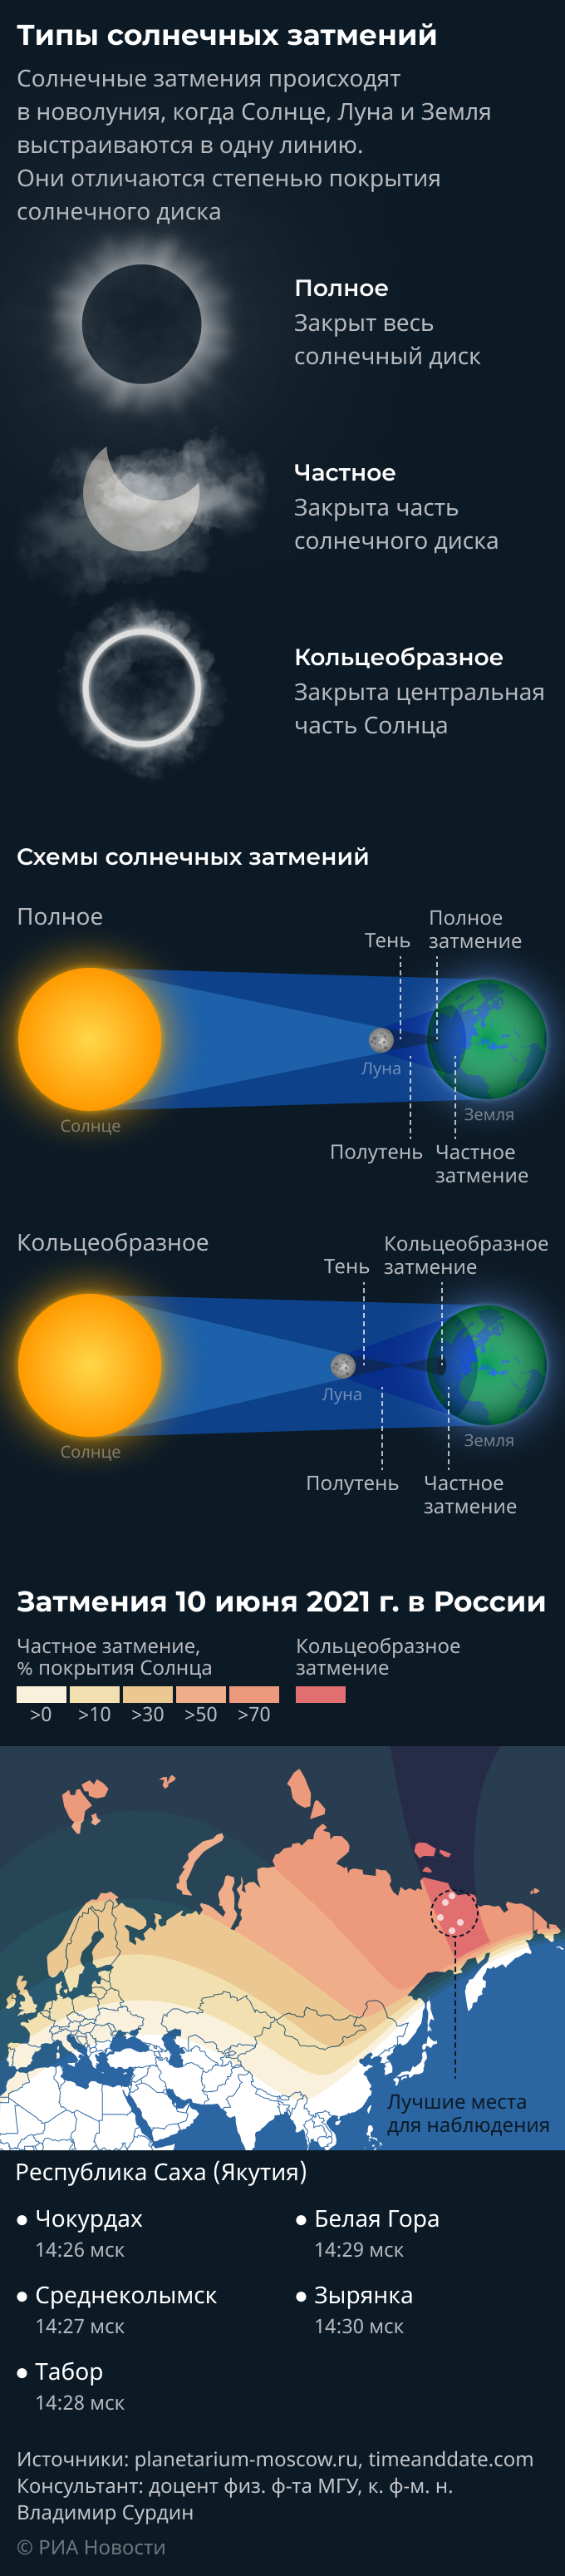 Кольцевое солнечное затмение. Когда будет солнечное затмение в 2021 году в России. Количество солнечных затмений в год. Через сколько лет будет затмение в России. Затмение 10 апреля 2024